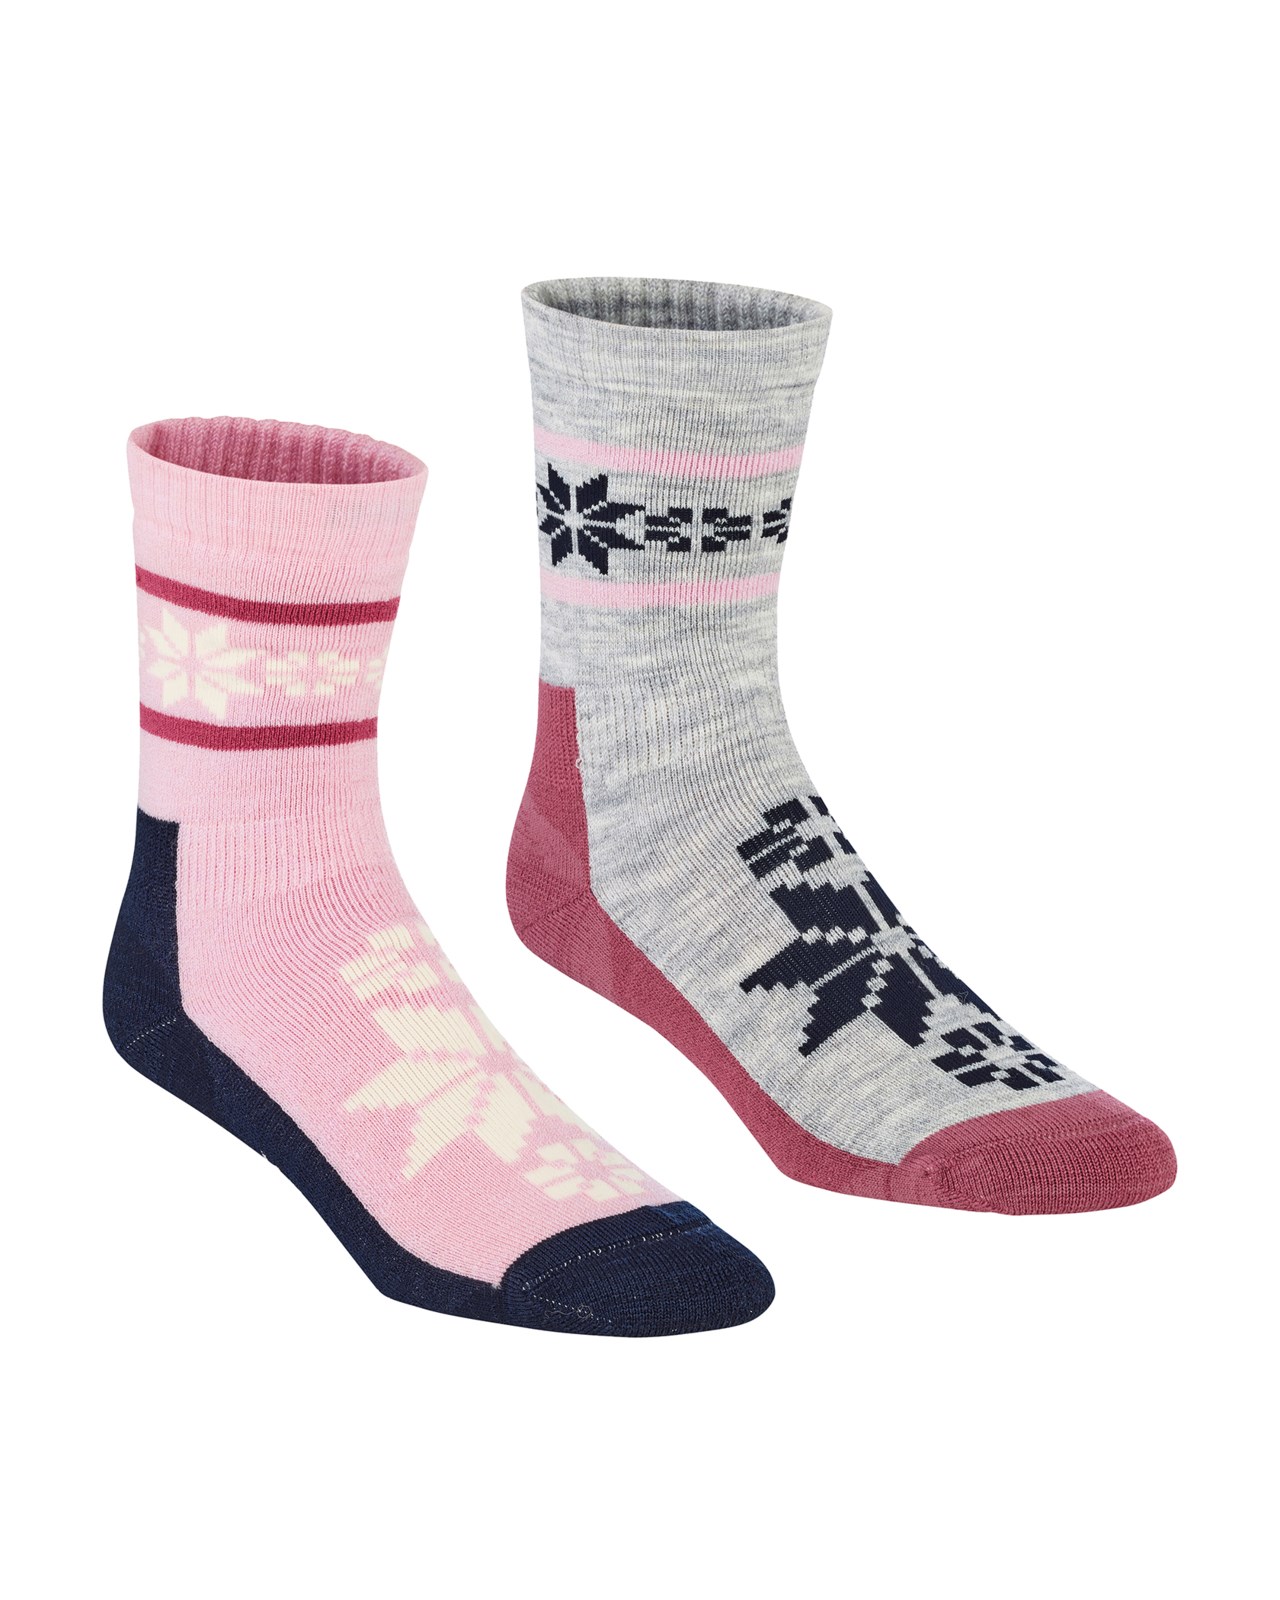 Kari Traa Rusa Wool Sock 2-Pack